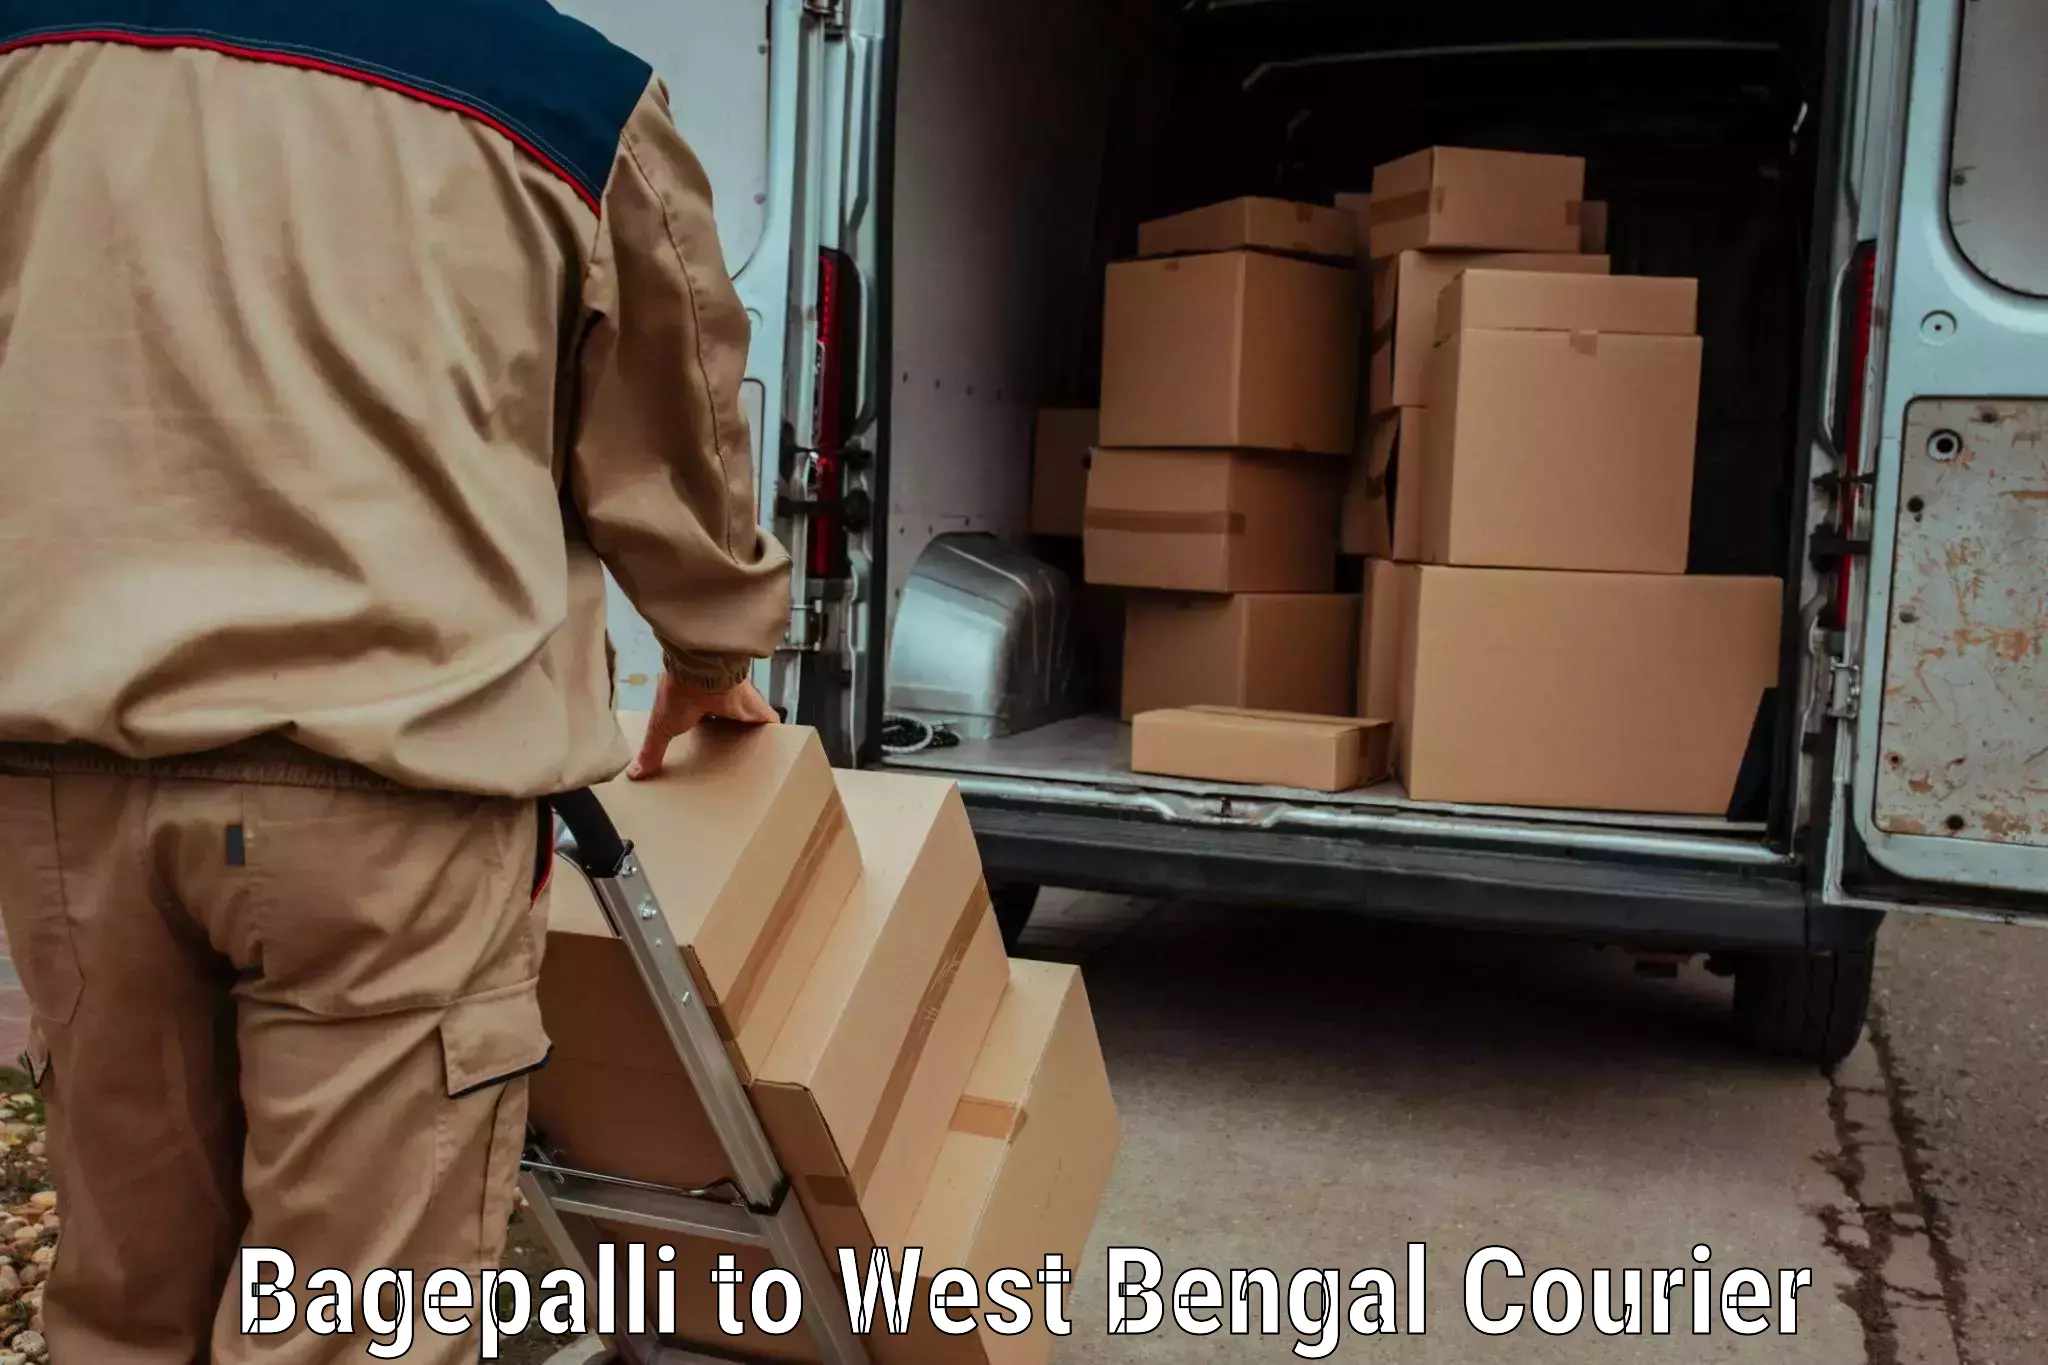 Next-day freight services Bagepalli to Kolkata